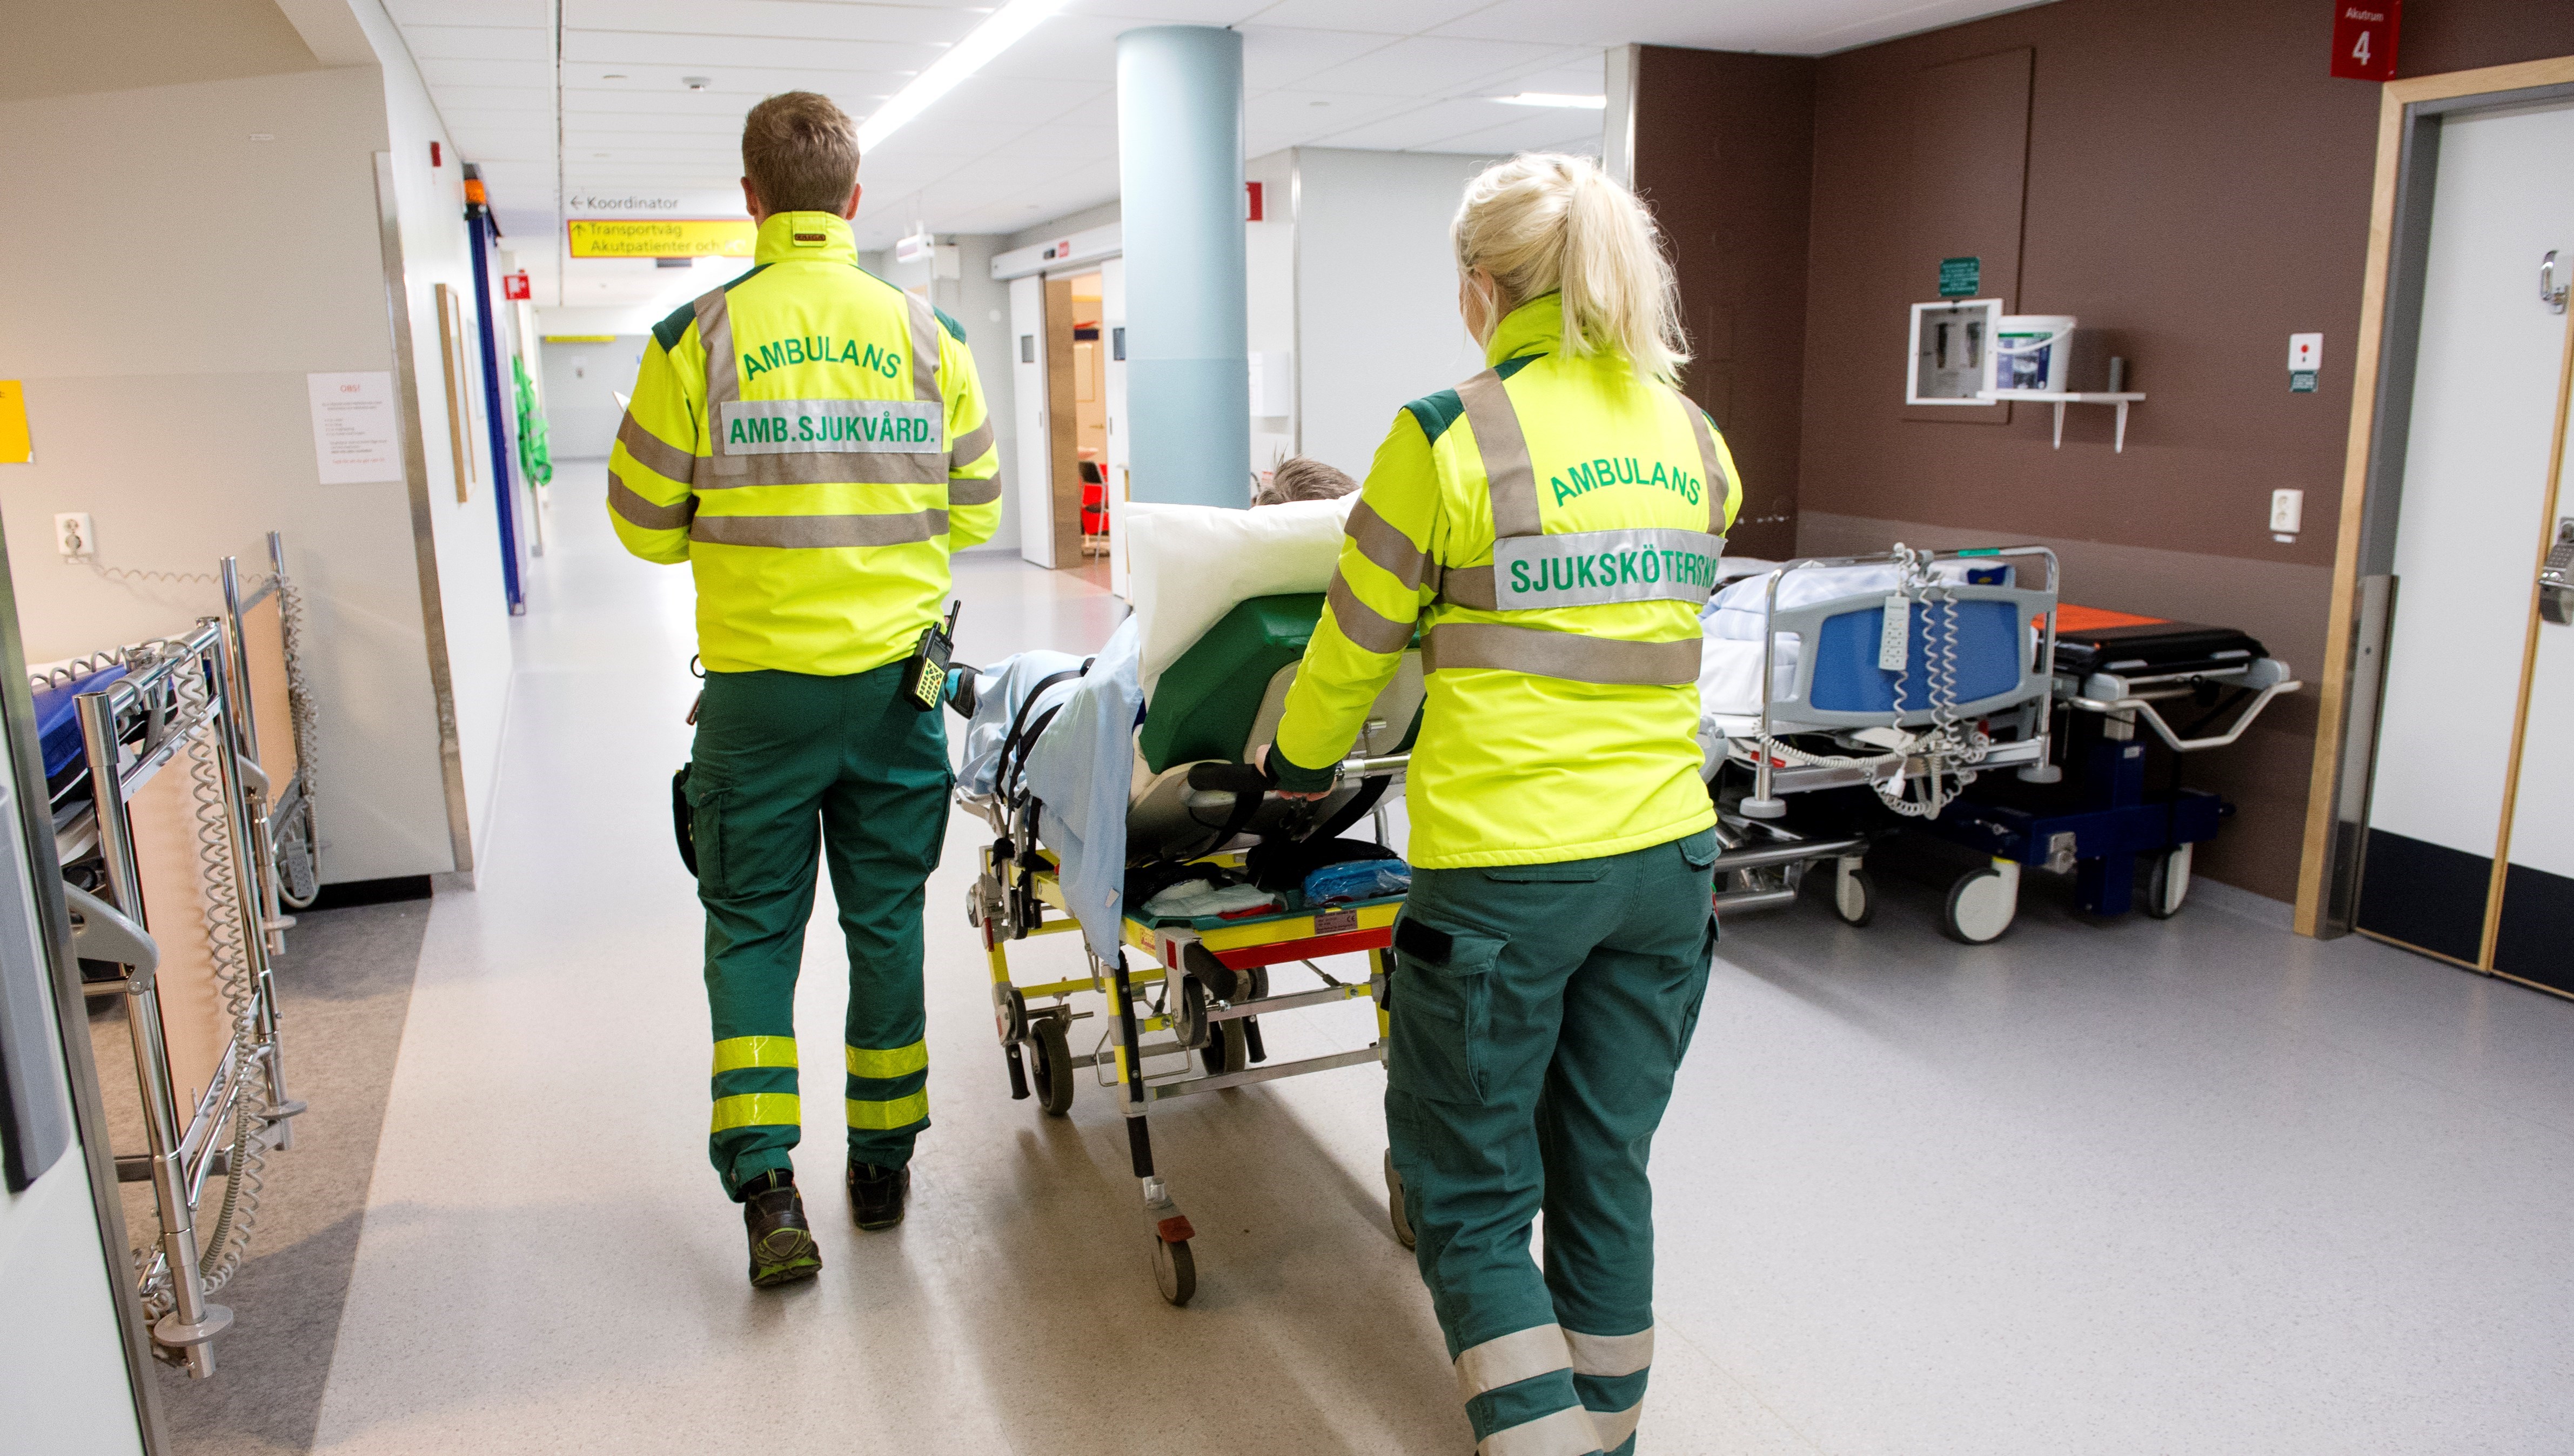 En kvinnlig ambulanssjuksköterskas och en manlig ambulanssjukvårdares ryggar syns när de kör en patient i en sjukhuskorridor.